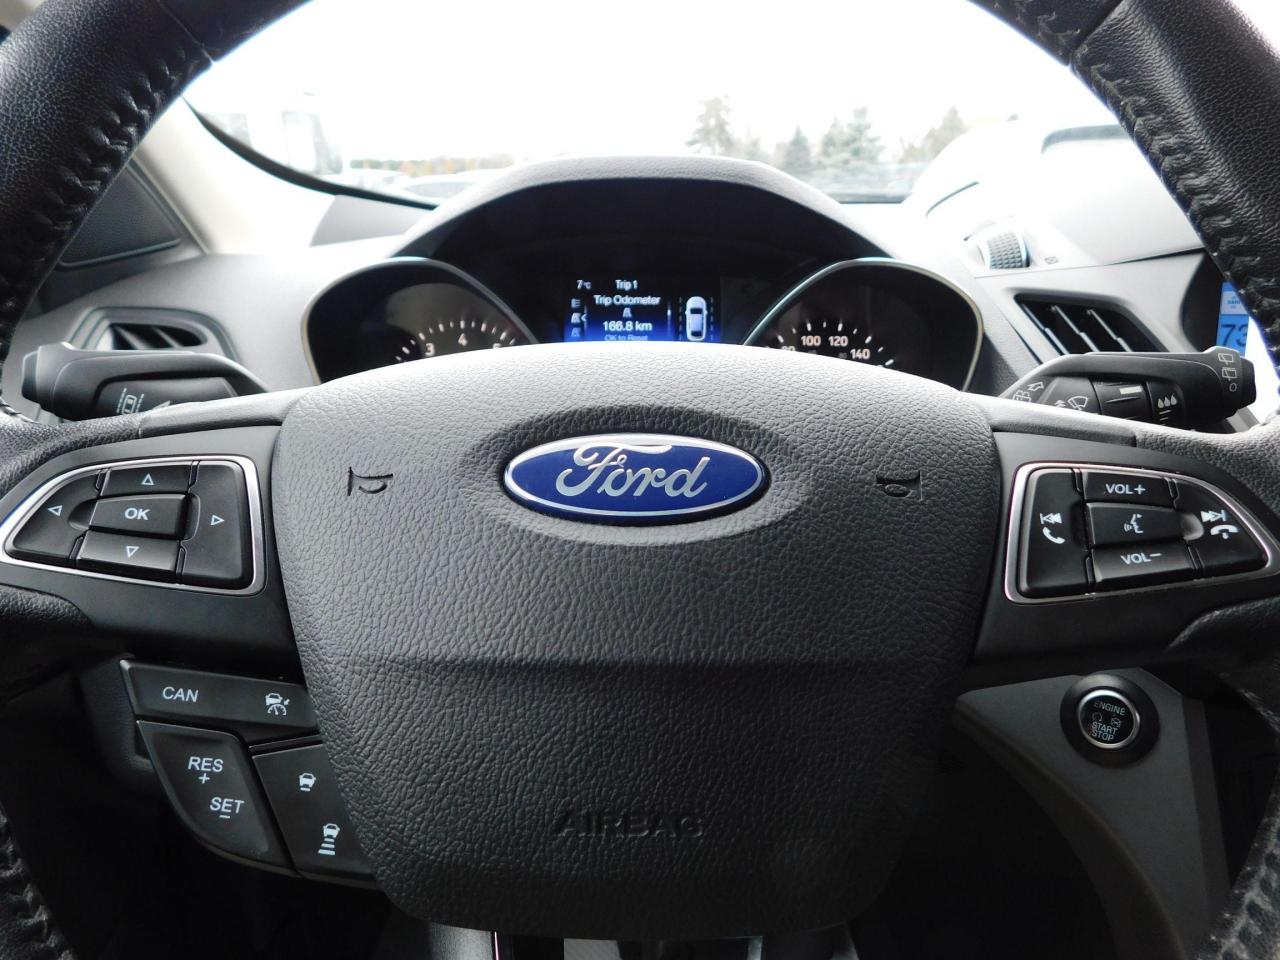 2019 Ford Escape SEL | 4WD | Backup Camera | USB/AUX | - Photo #13